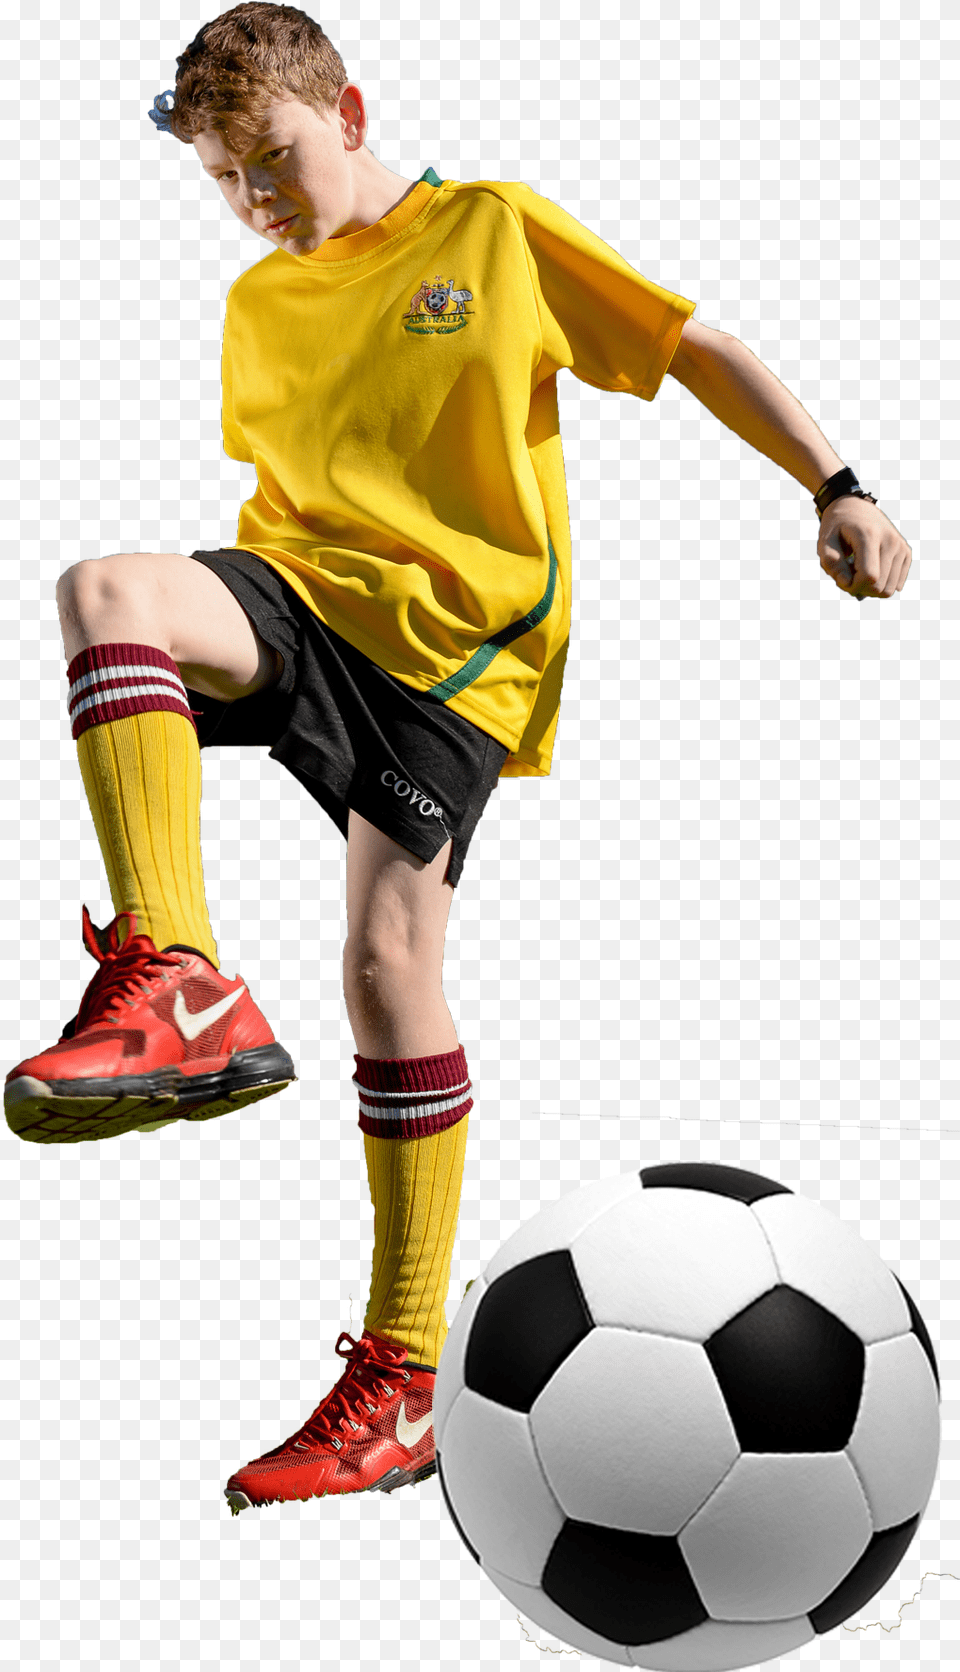 Junior Football Player, Ball, Soccer, Soccer Ball, Footwear Png